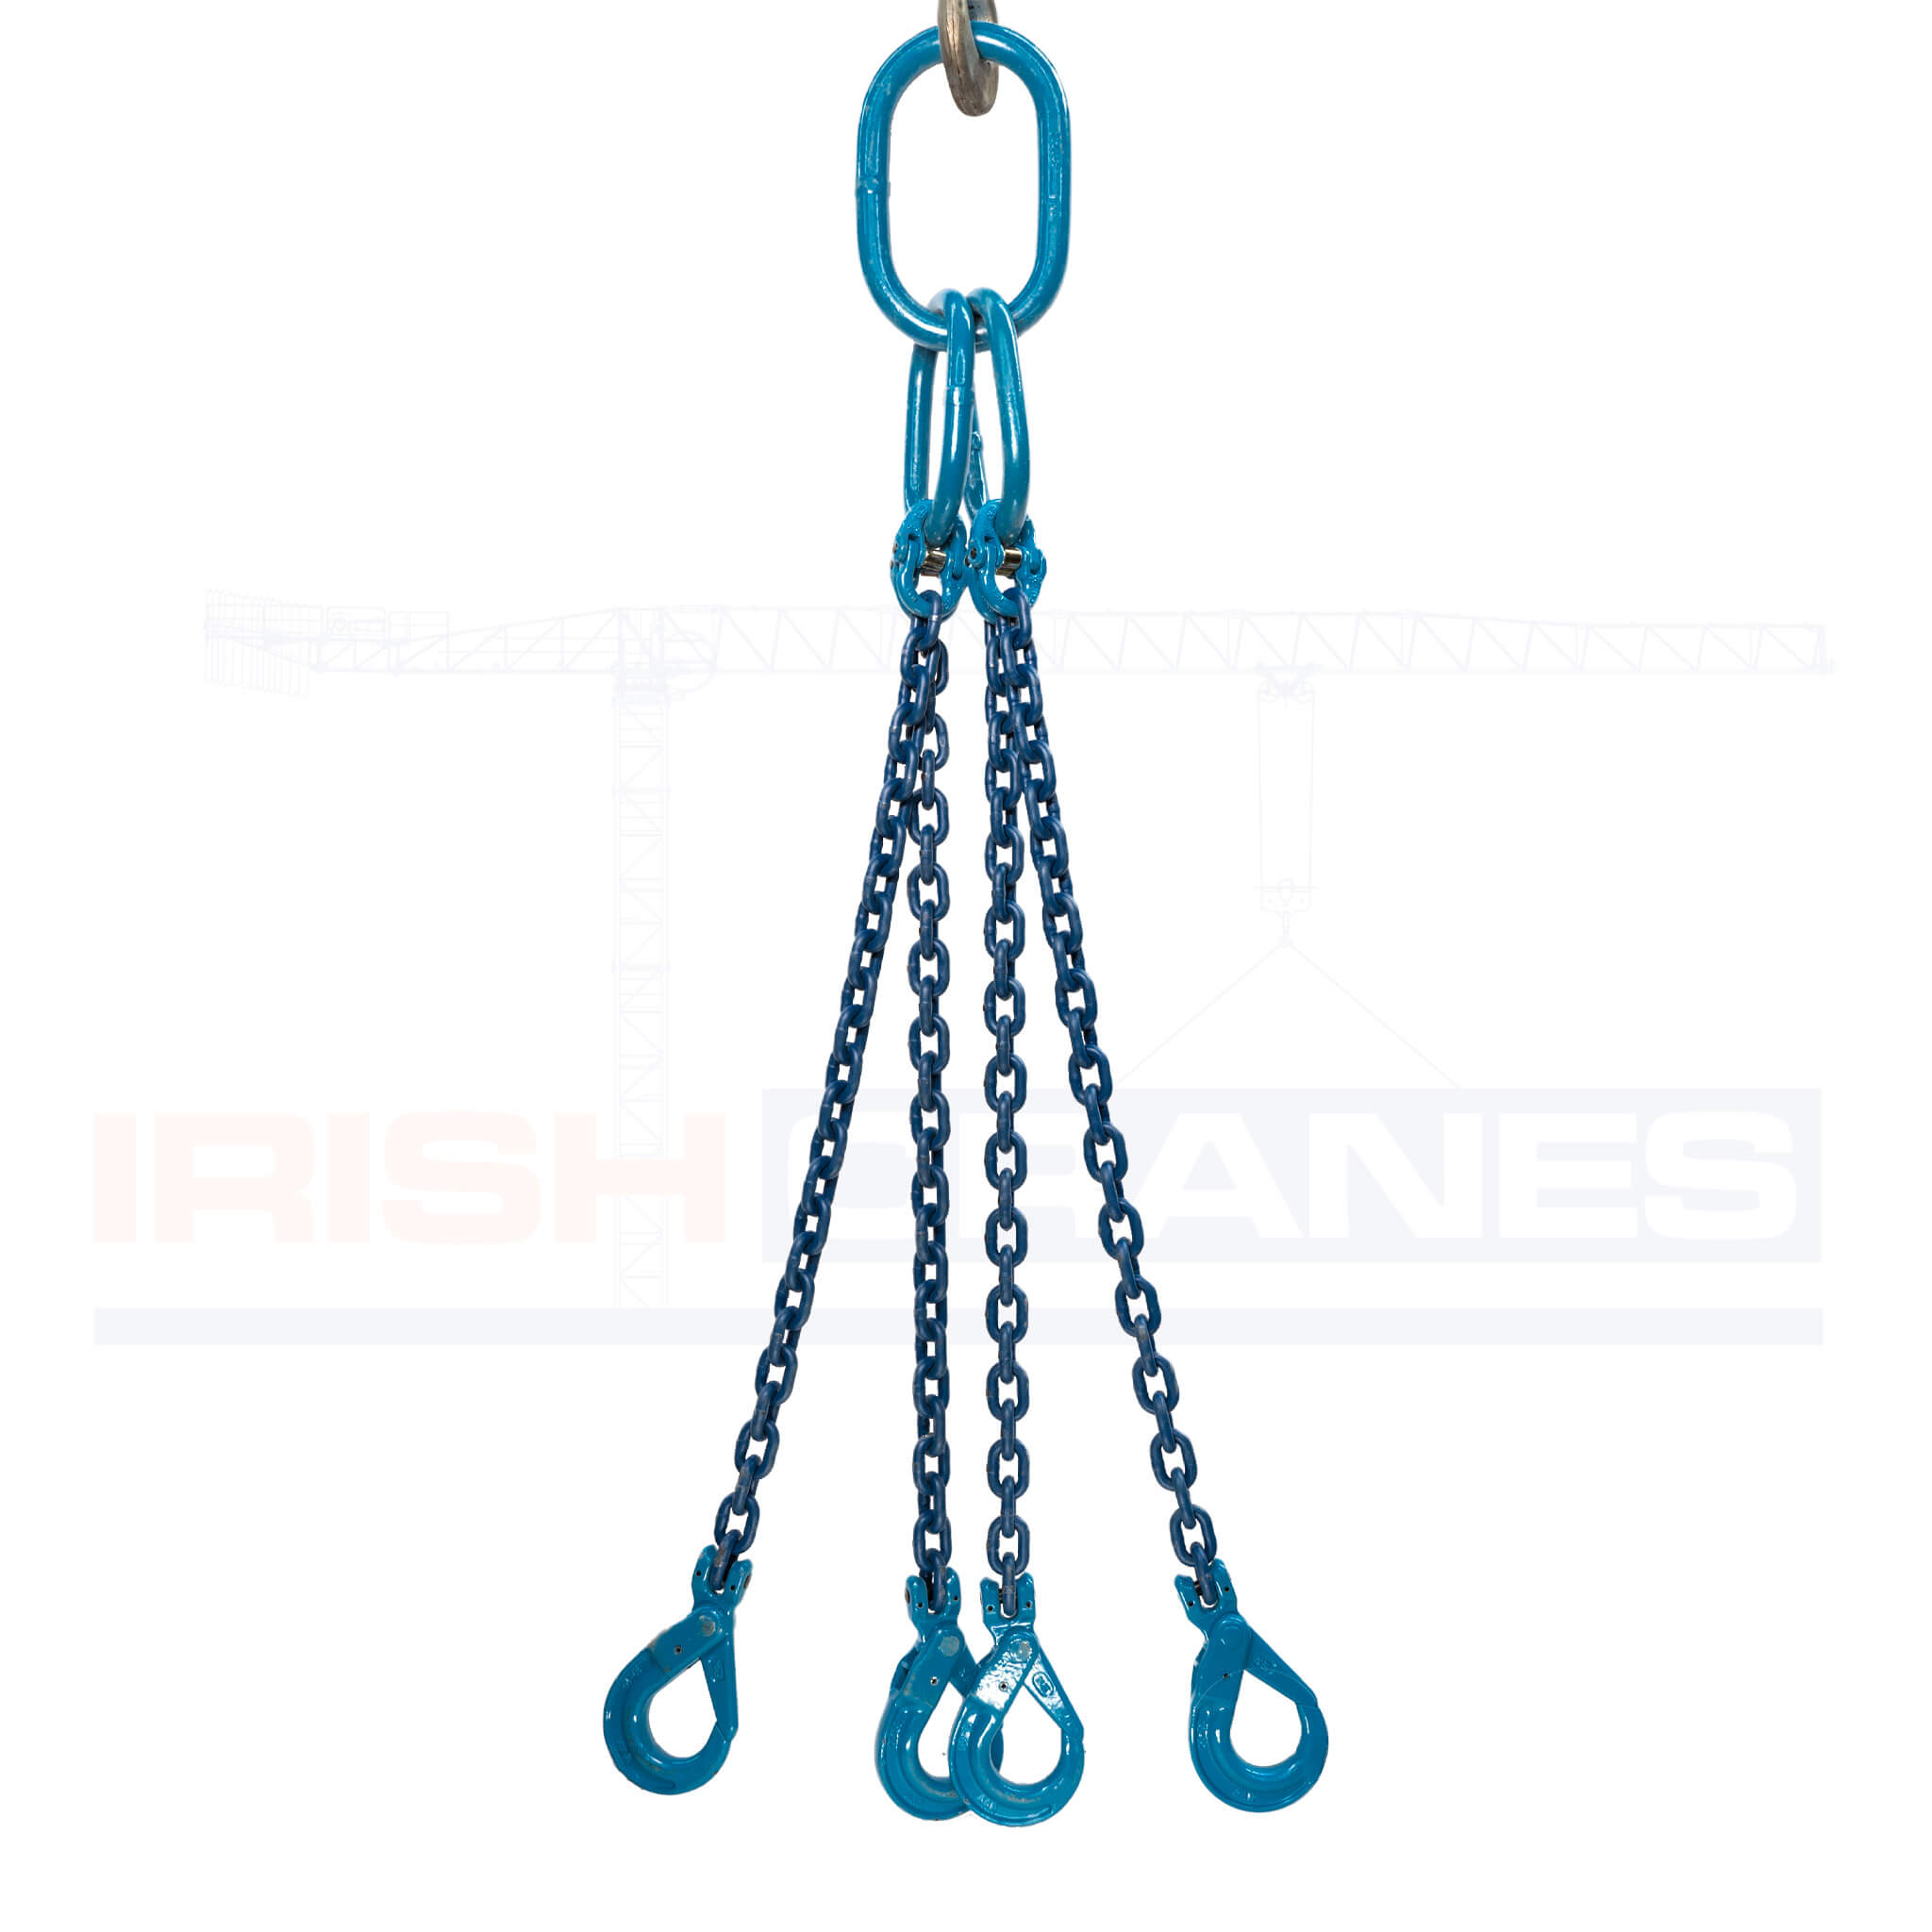 4 Leg Chain – Lifting Chain Sling